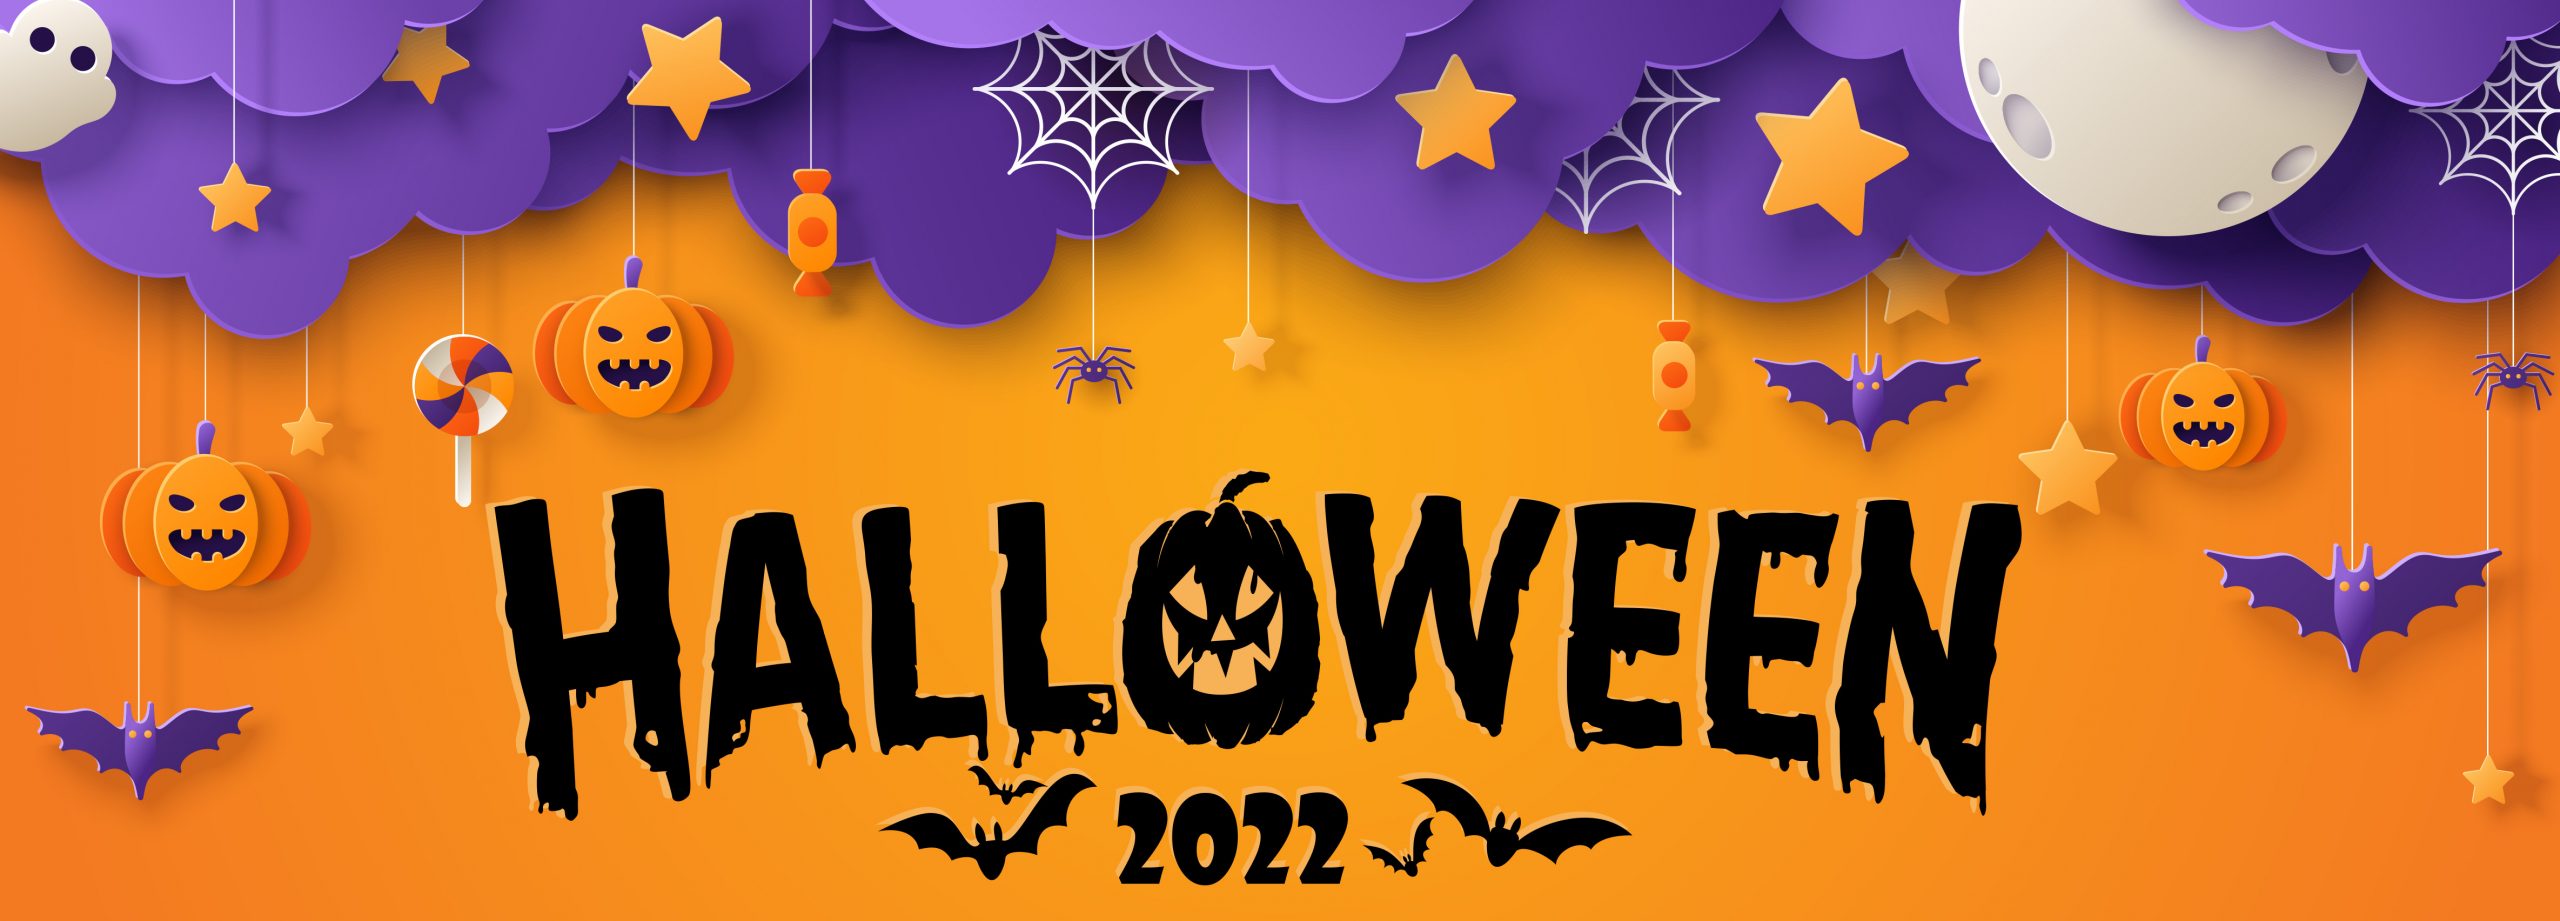 Halloween web header 2022